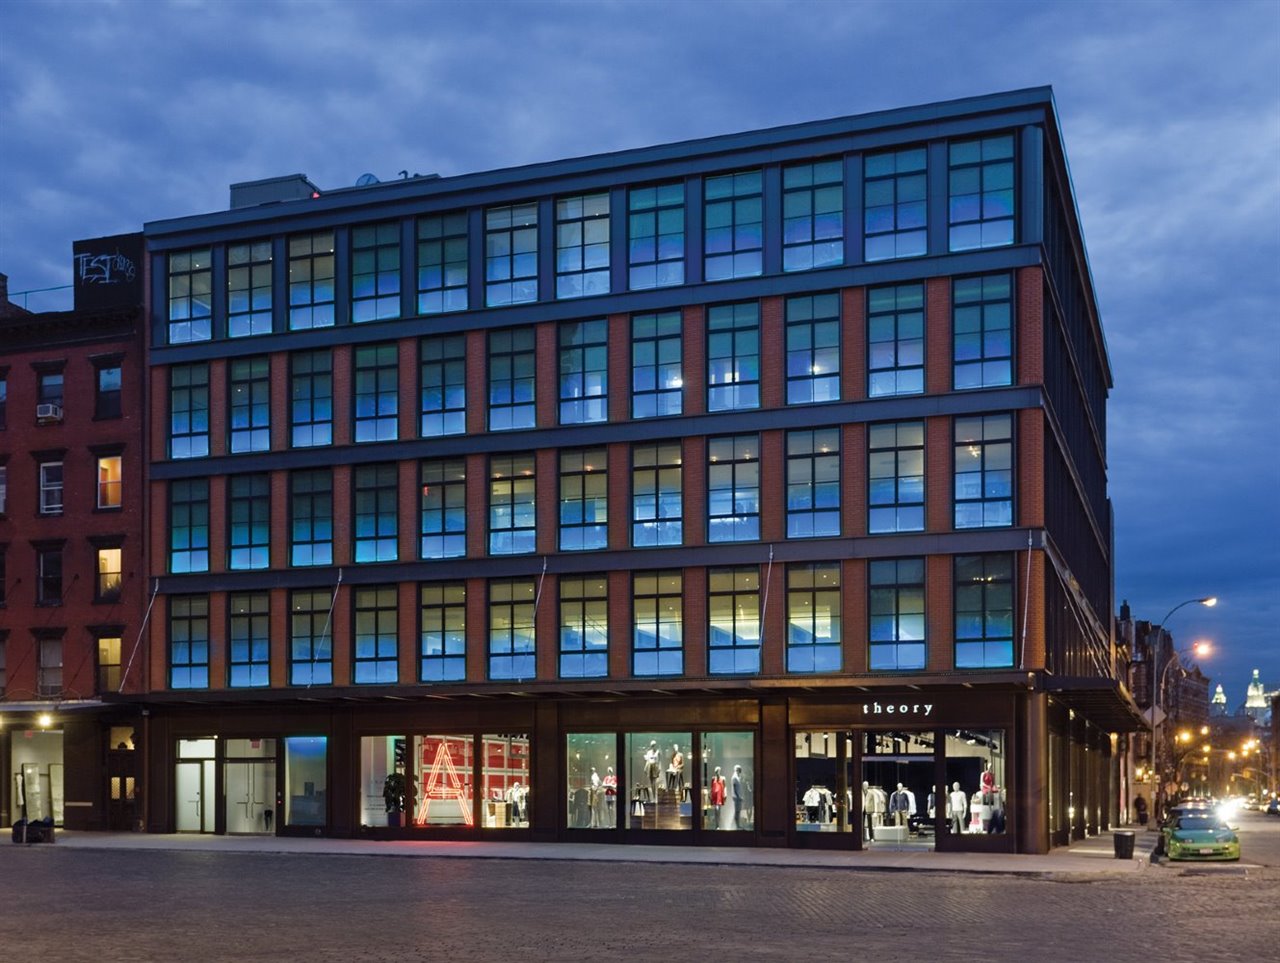 La firma de moda Theory tiene su centro de operaciones en el Meatpacking District de Nueva York.